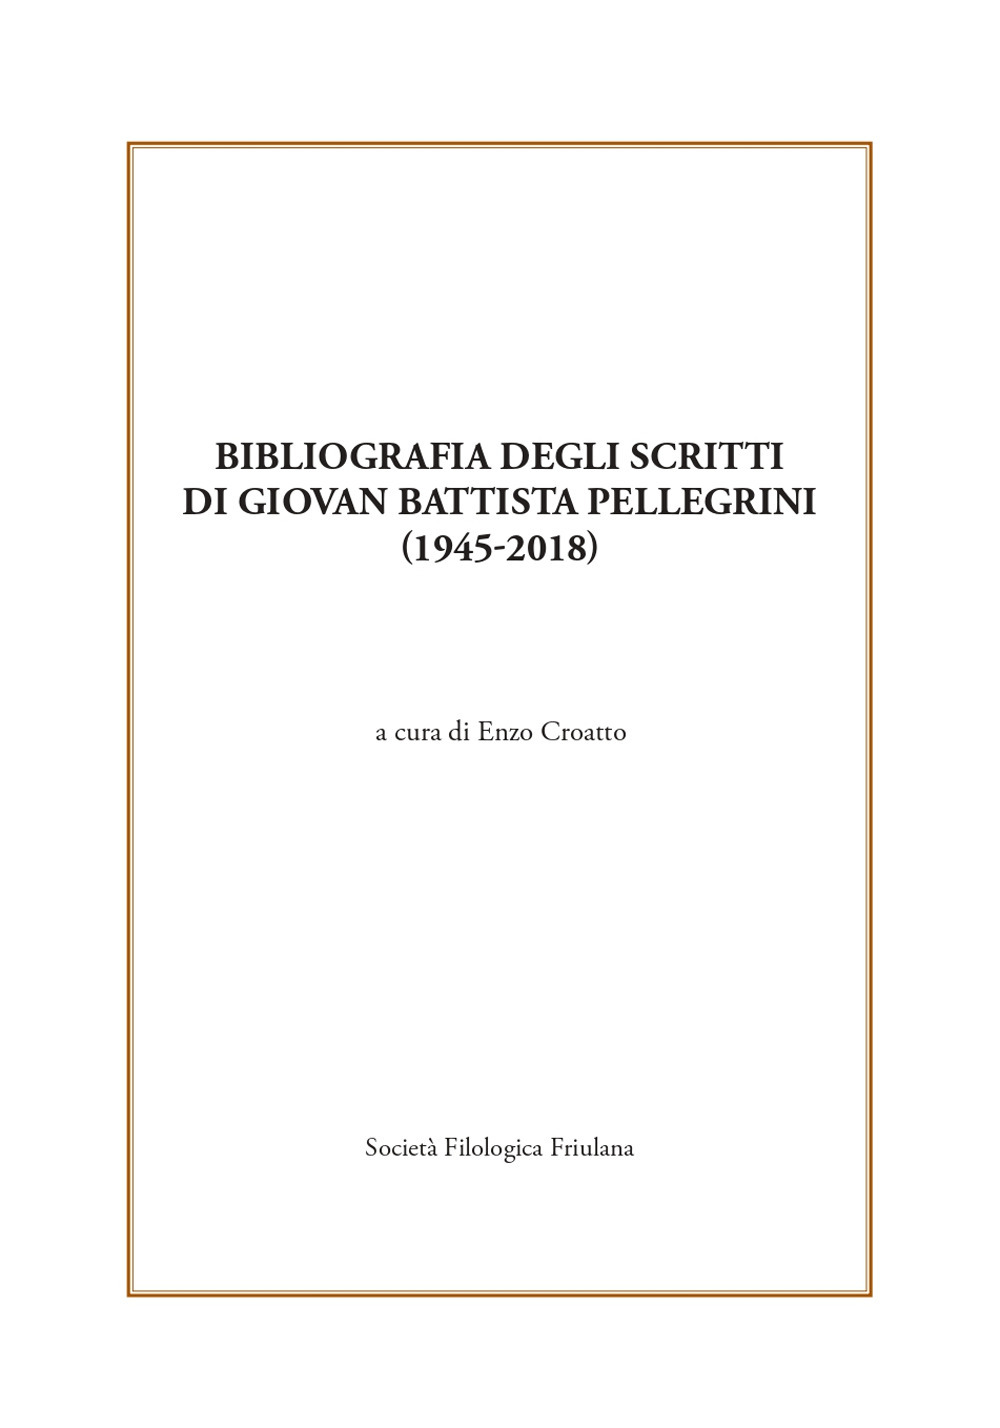 Bibliografia degli scritti di Giovan Battista Pellegrini (1945-2018)